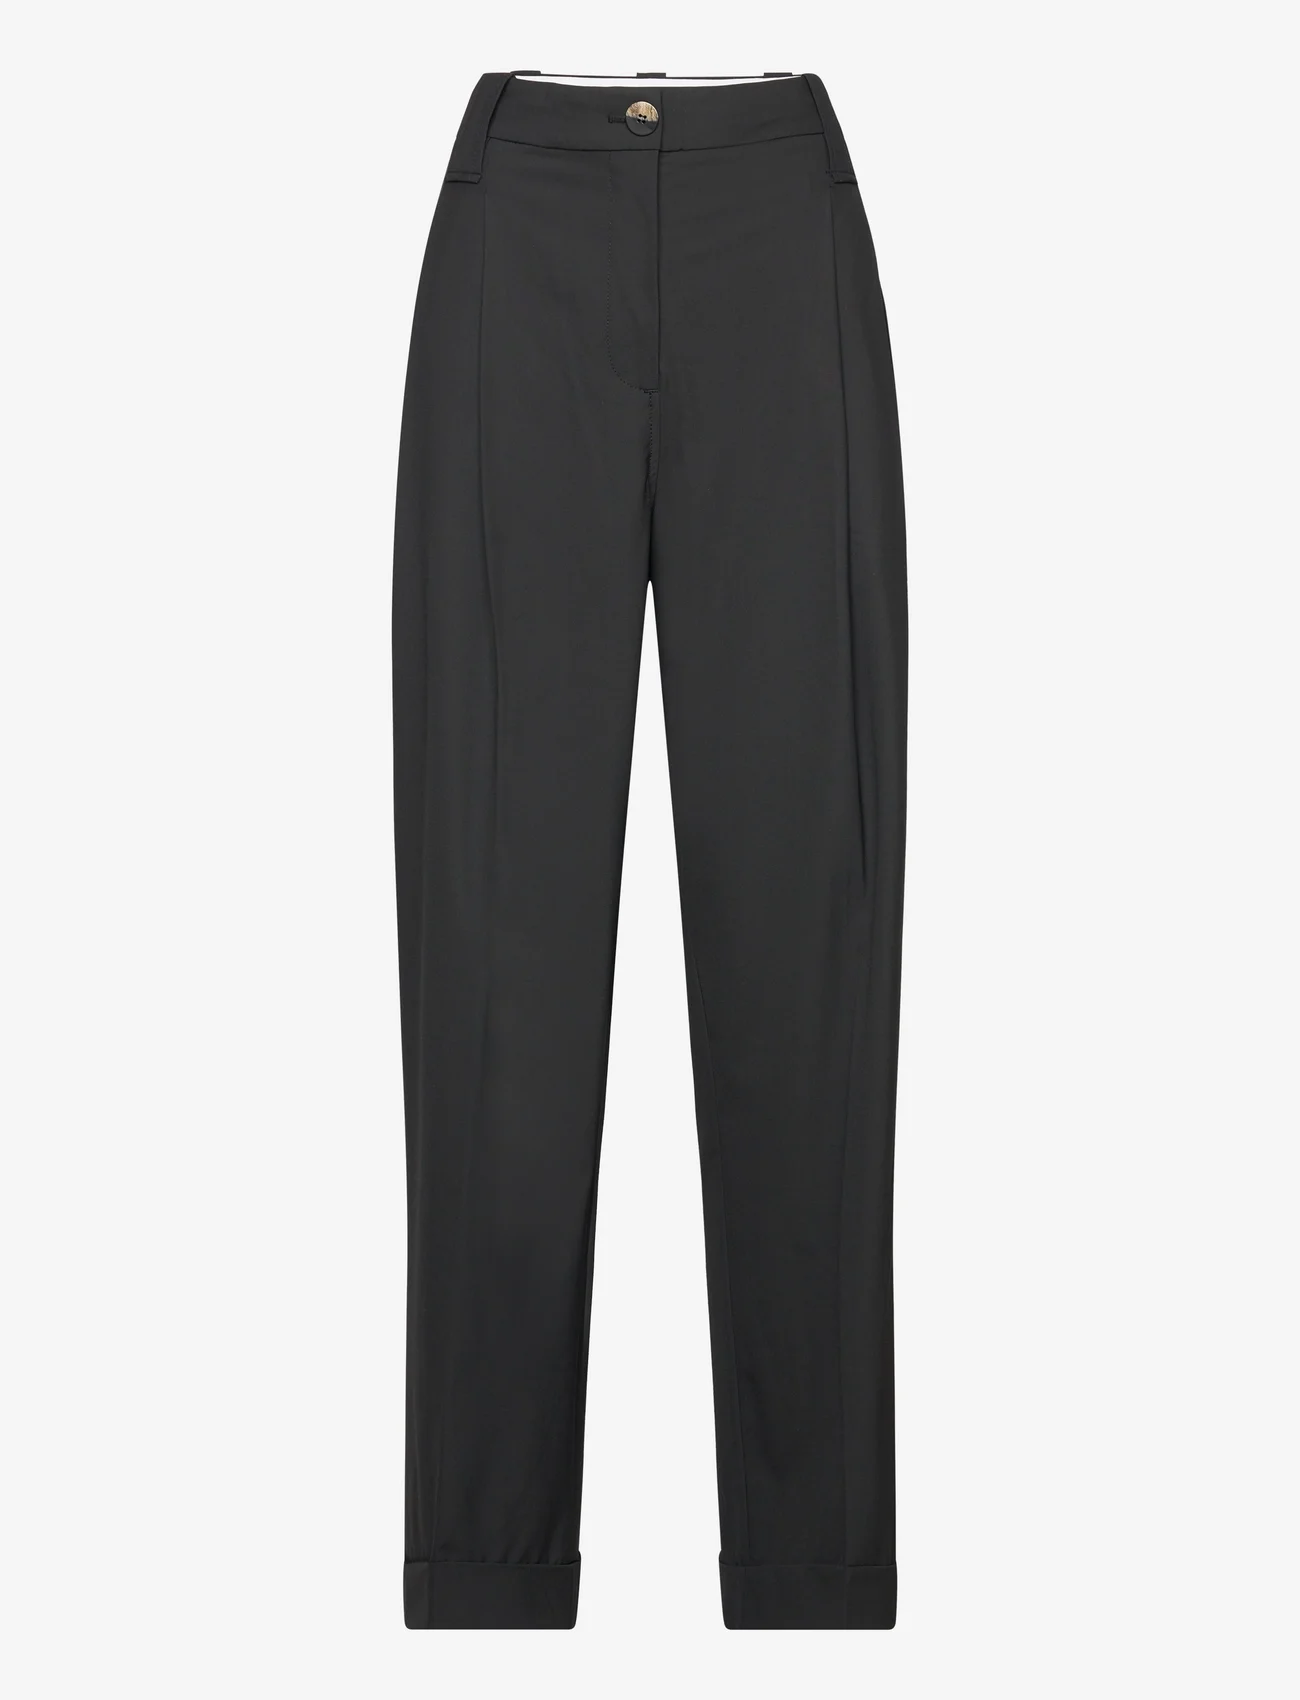 Ganni - Drapey Melange - bukser med brede ben - black - 0